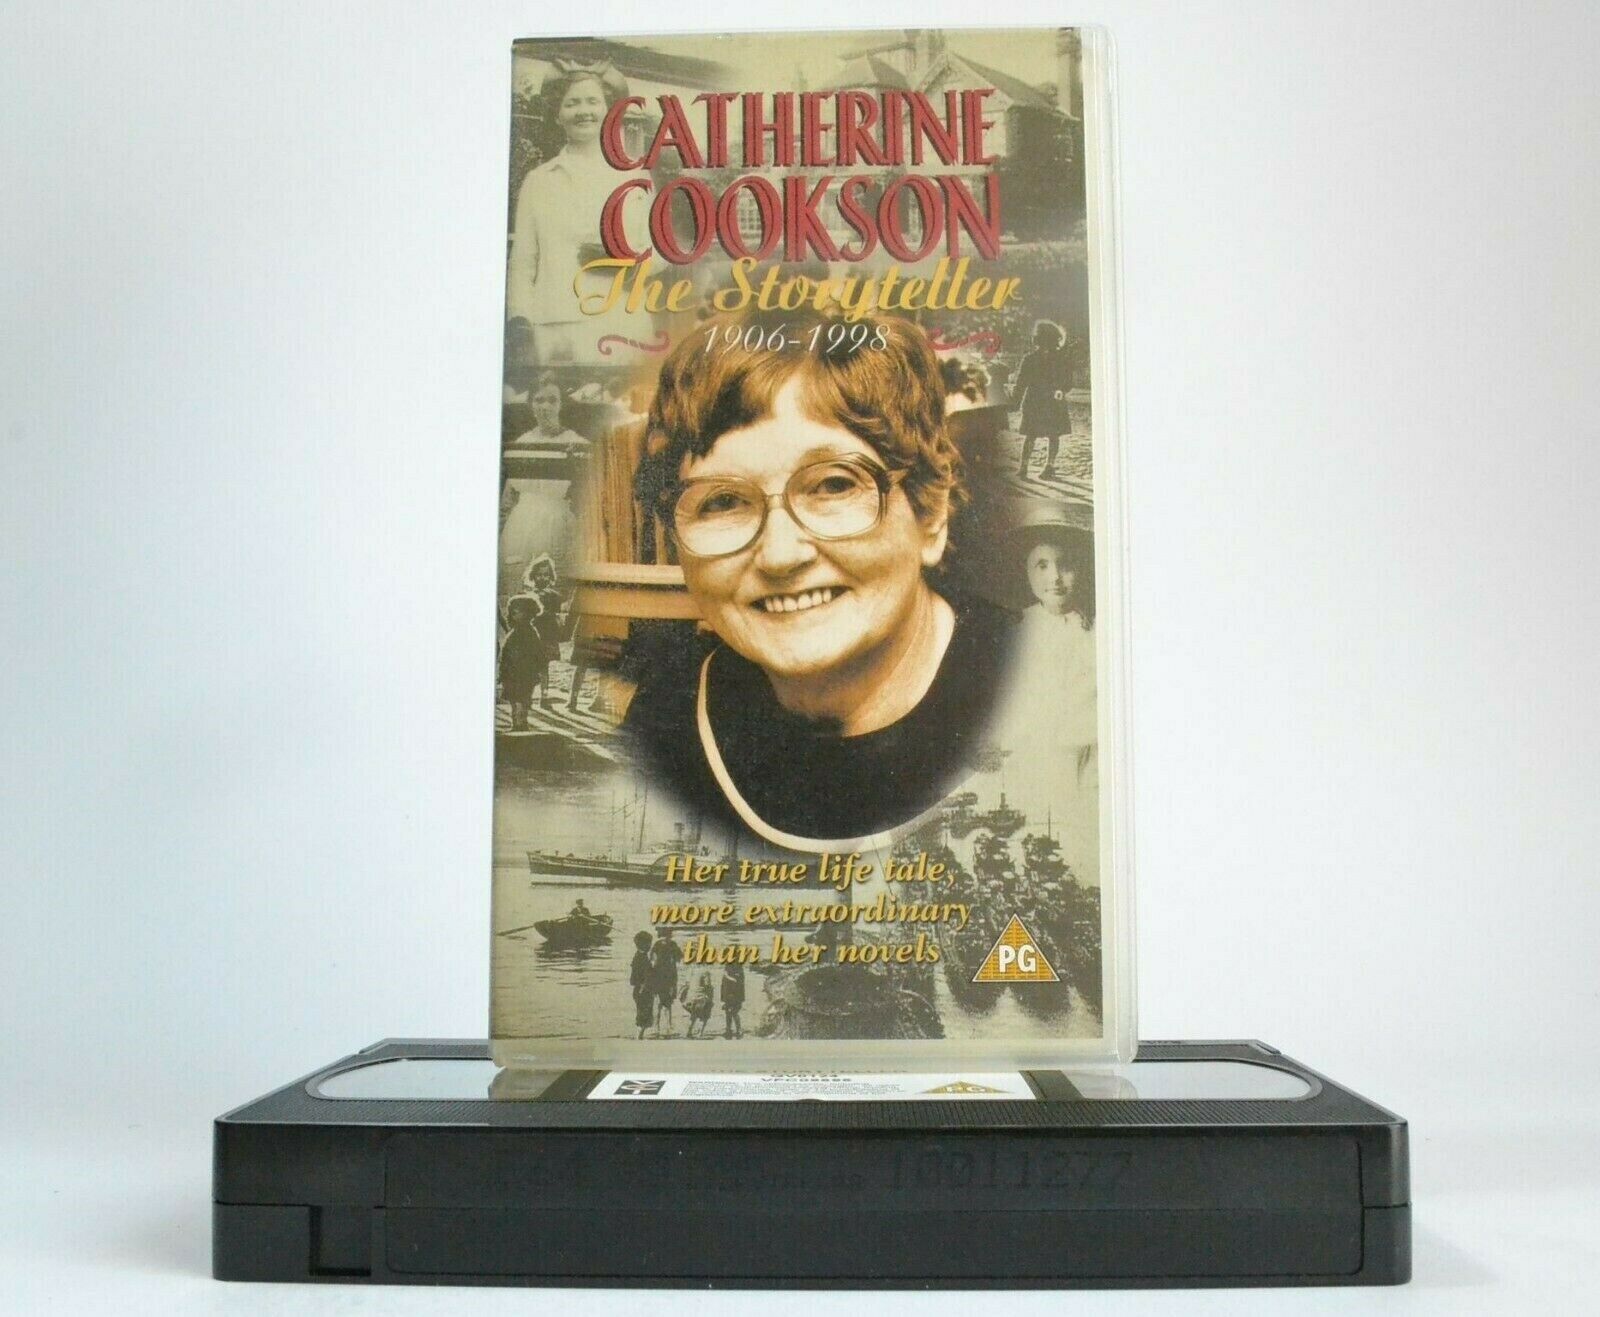 Catherine Cookson: The Storyteller(1906-1998) - Documentary - Mike Neville - VHS-